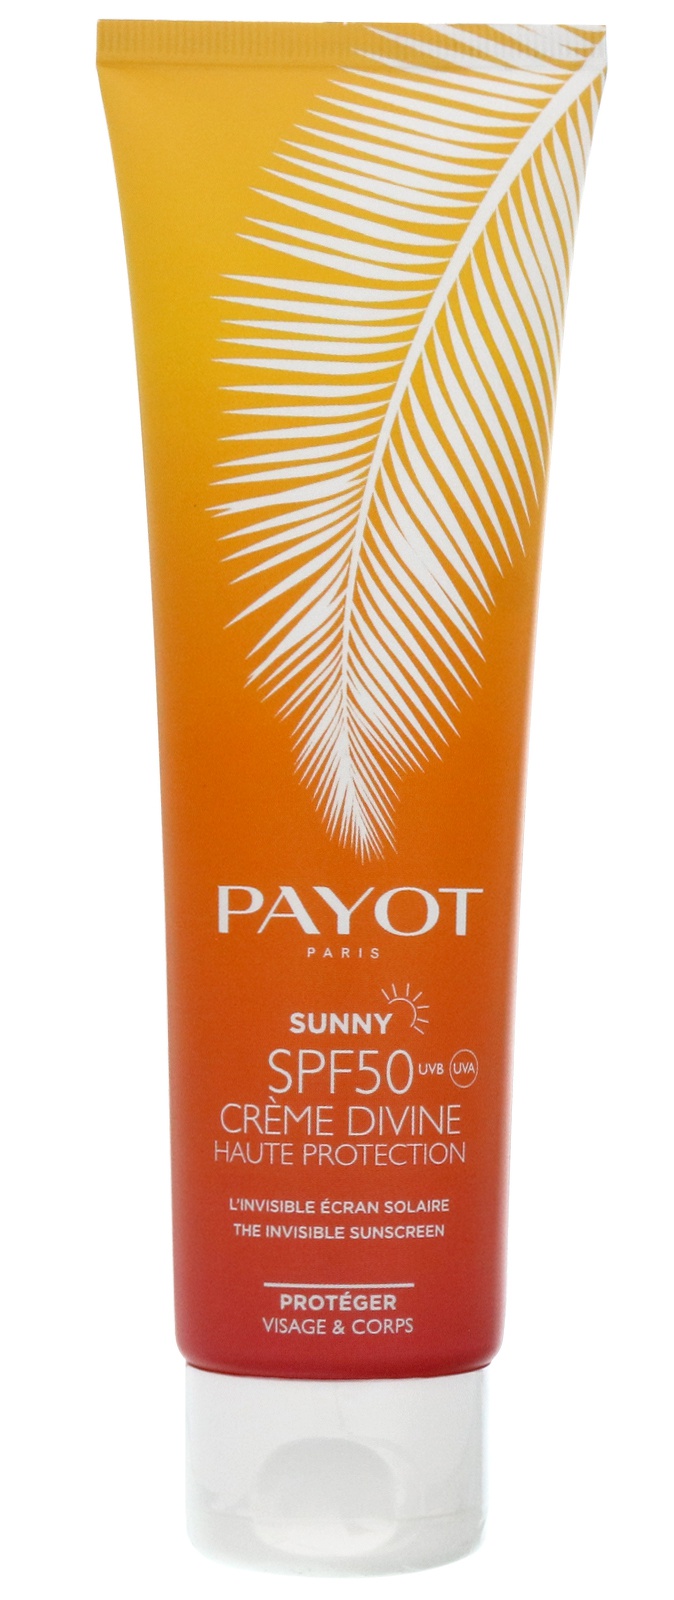 Payot paris Crème Divine Spf 50